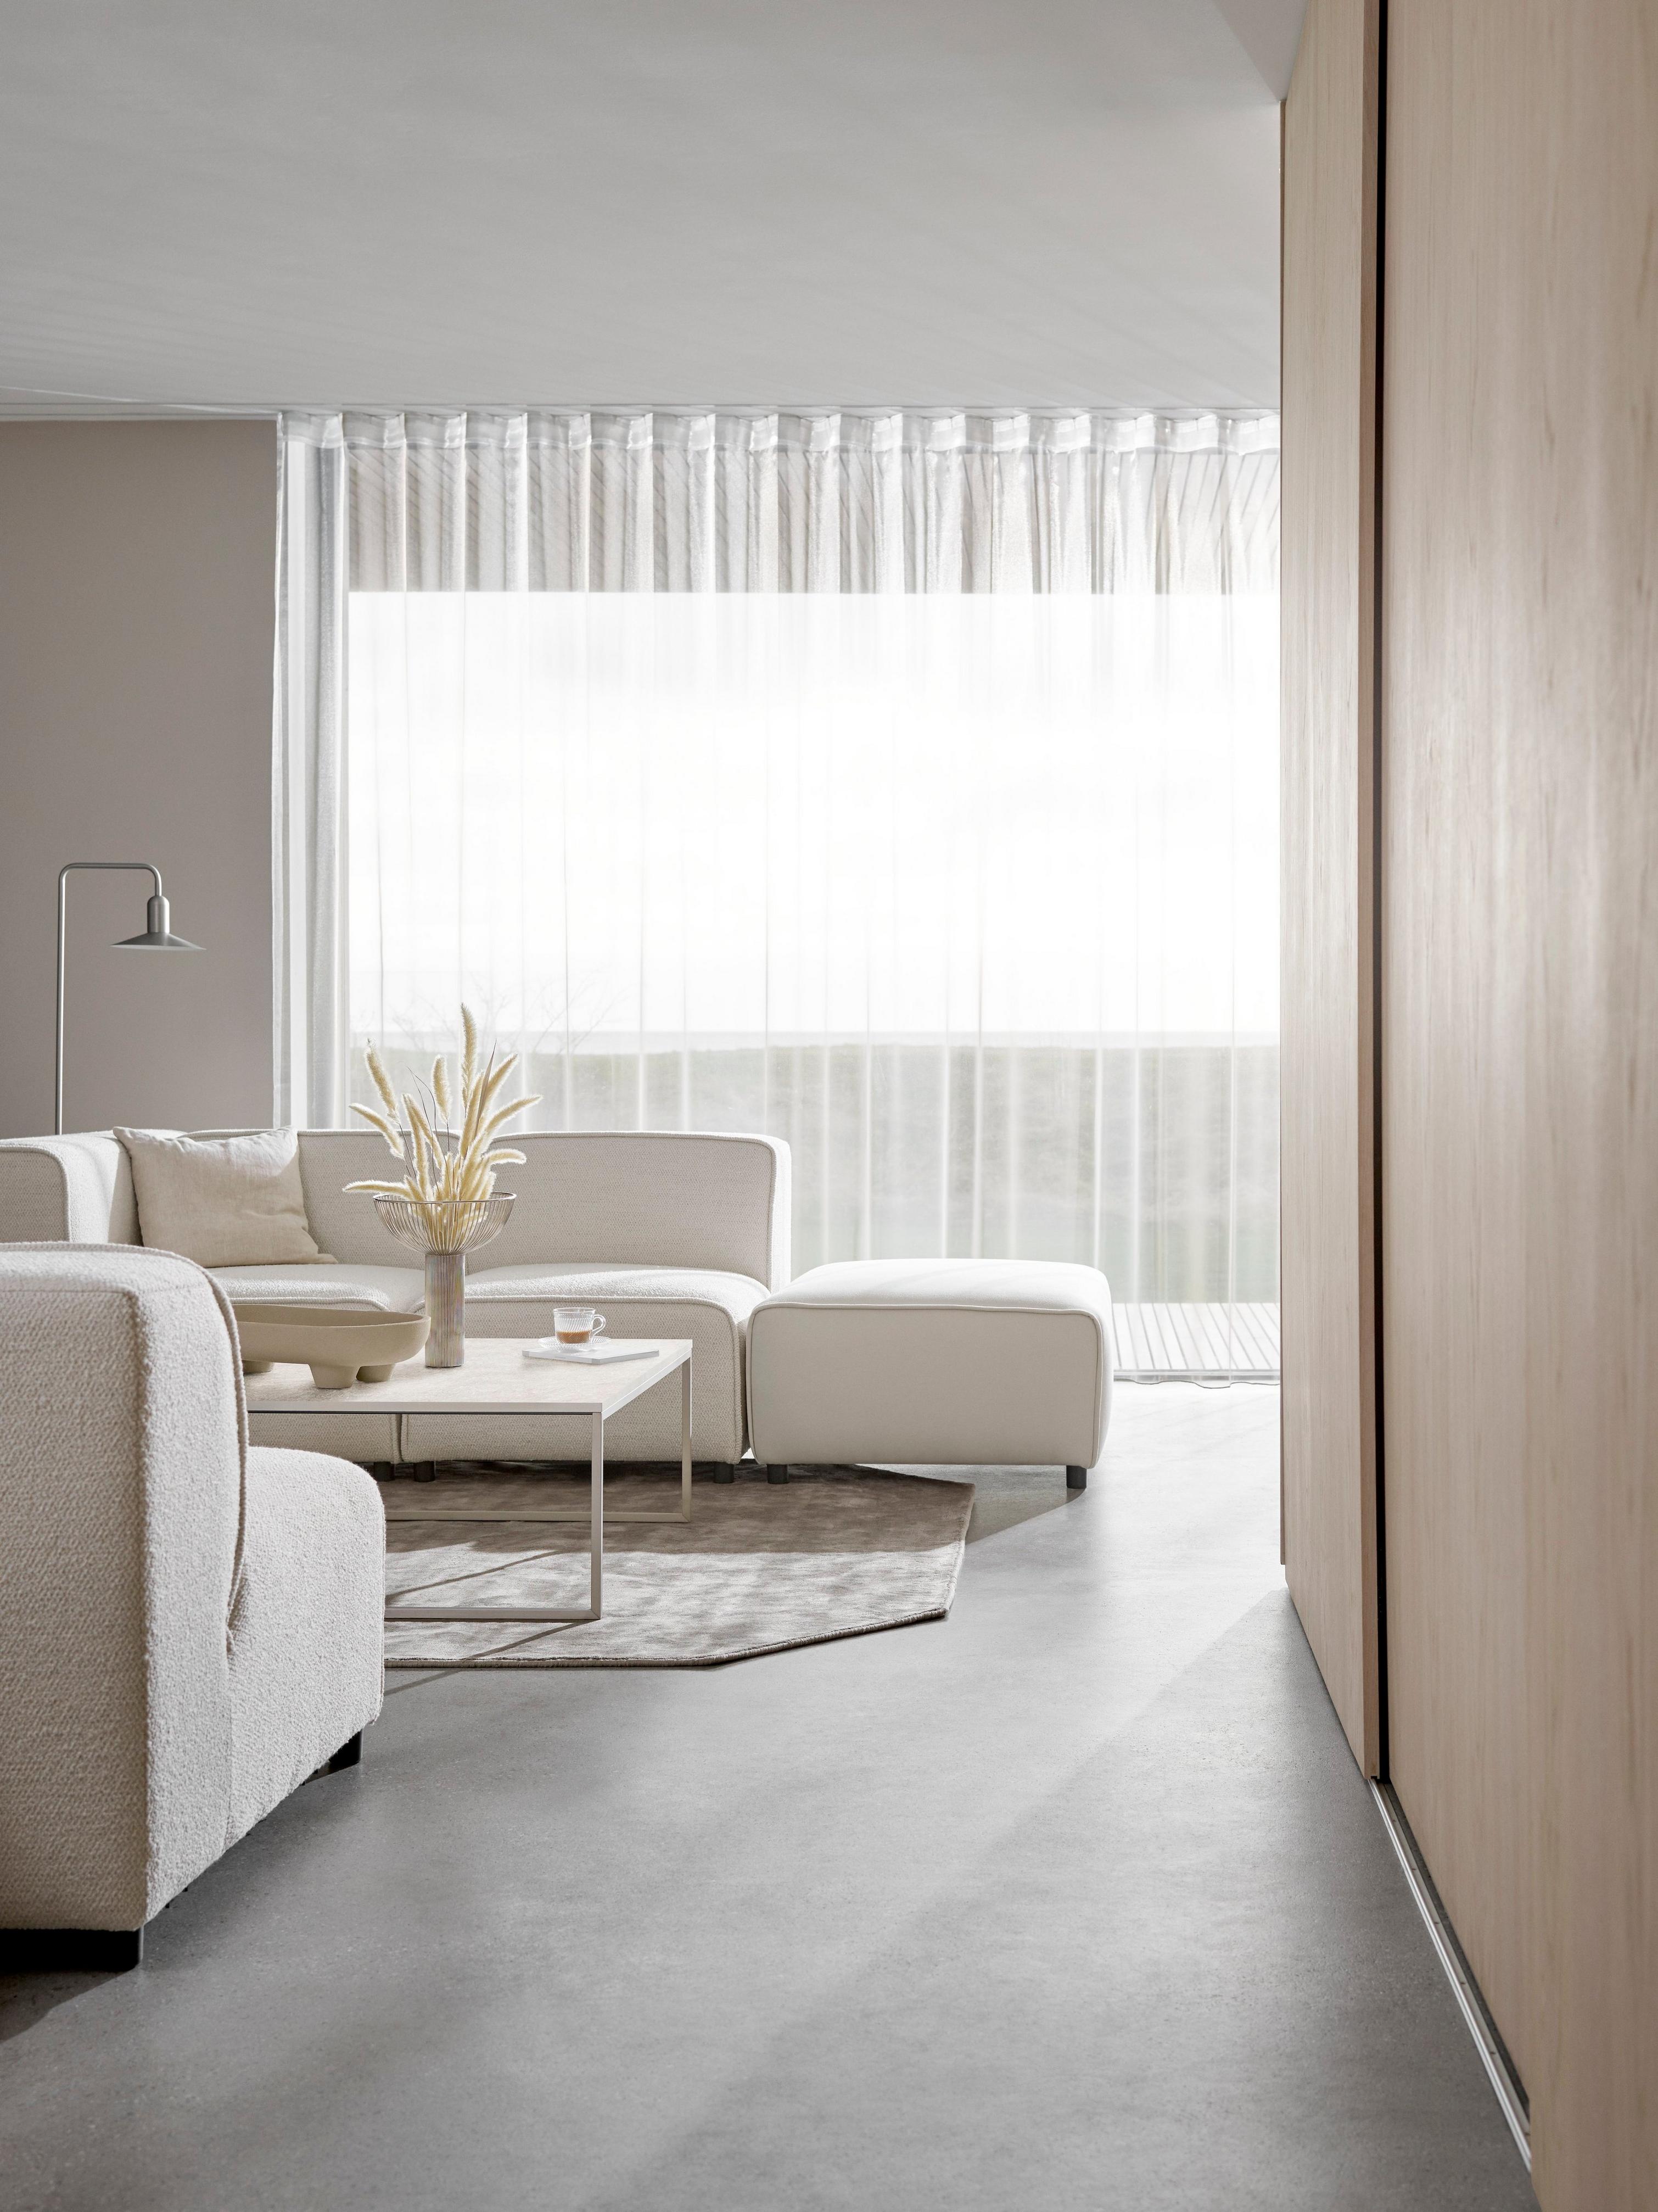 Sofá Carmo en color crema en una sala minimalista con cortinas transparentes que disipan la luz.